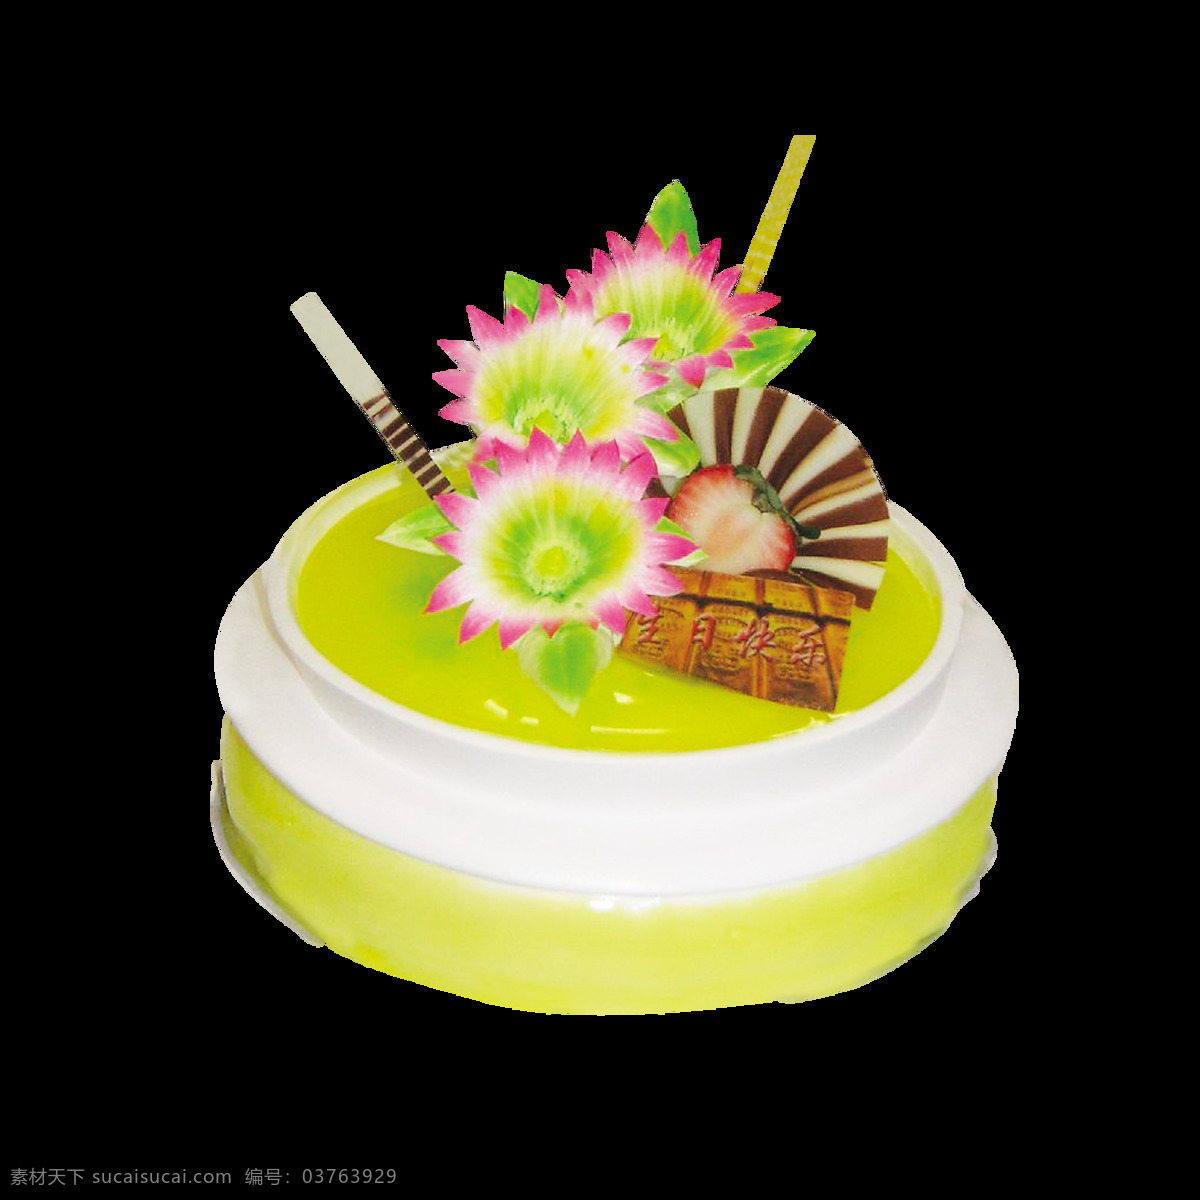 花朵 奶油 蛋糕 蛋糕图案 花朵蛋糕 黄色蛋糕 精美蛋糕素材 奶油蛋糕 生日蛋糕